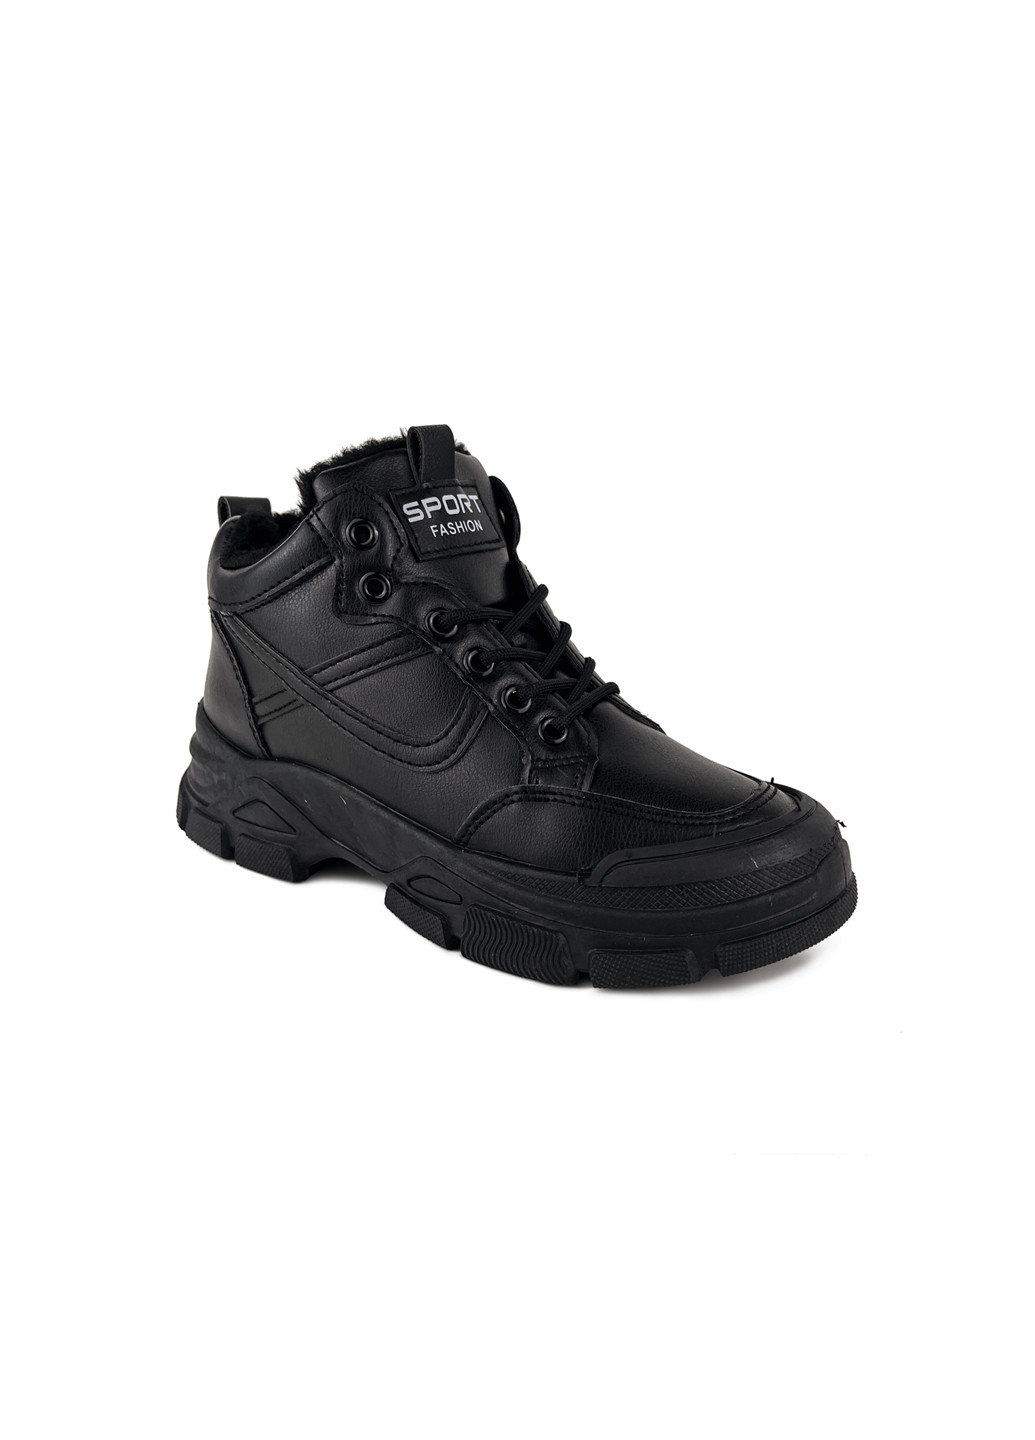 Зимові кросівки жіночі з еко шкіри чорні Fashion ботинки (251444252)